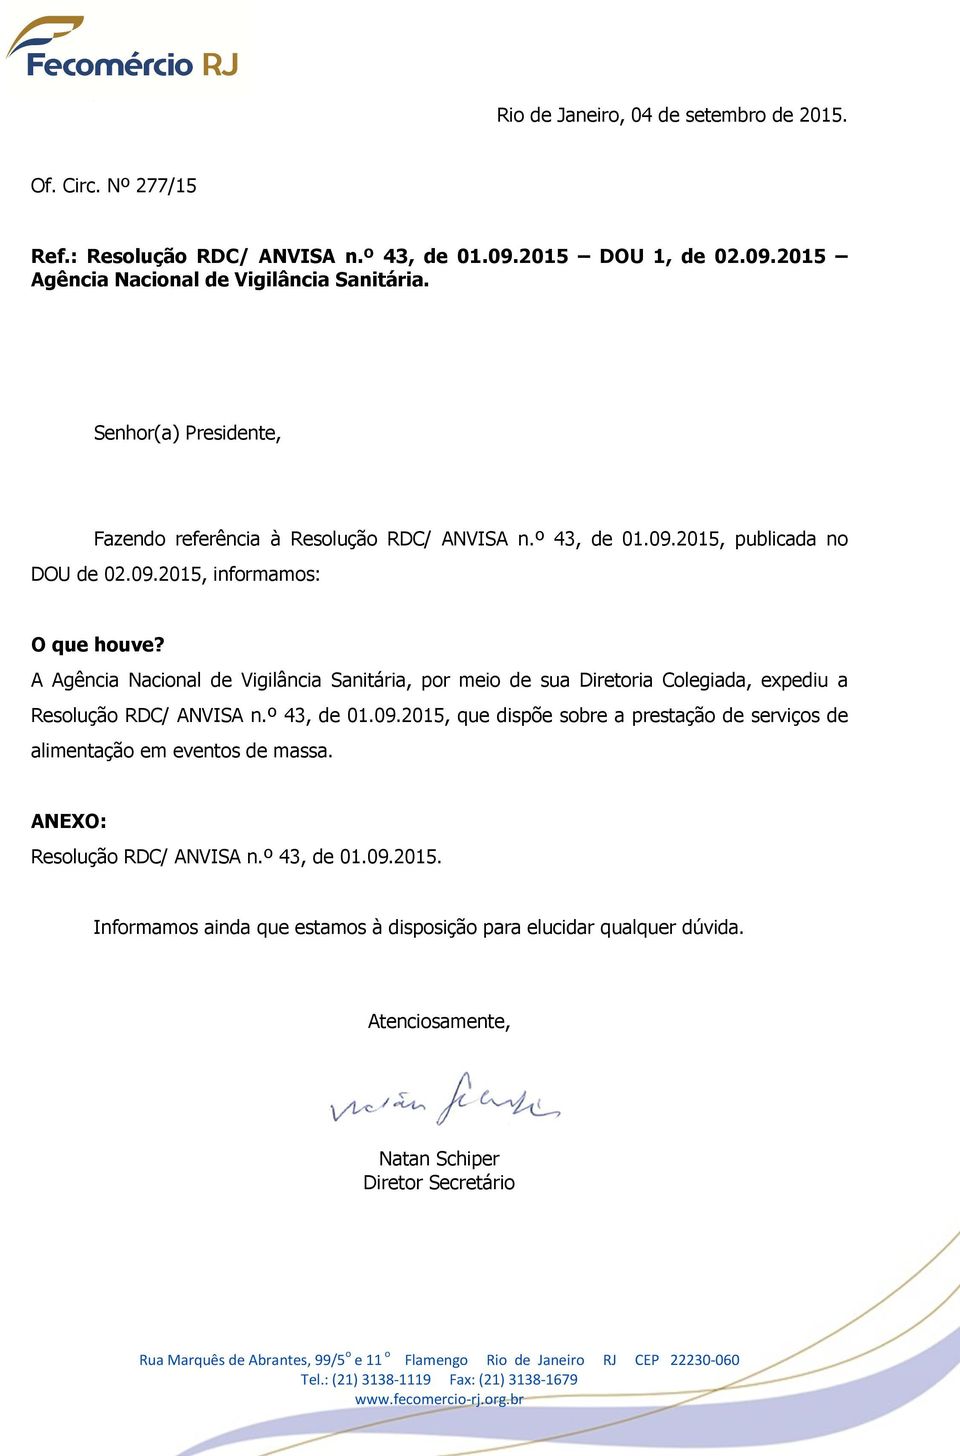 A Agência Nacional de Vigilância Sanitária, por meio de sua Diretoria Colegiada, expediu a Resolução RDC/ ANVISA n.º 43, de 01.09.